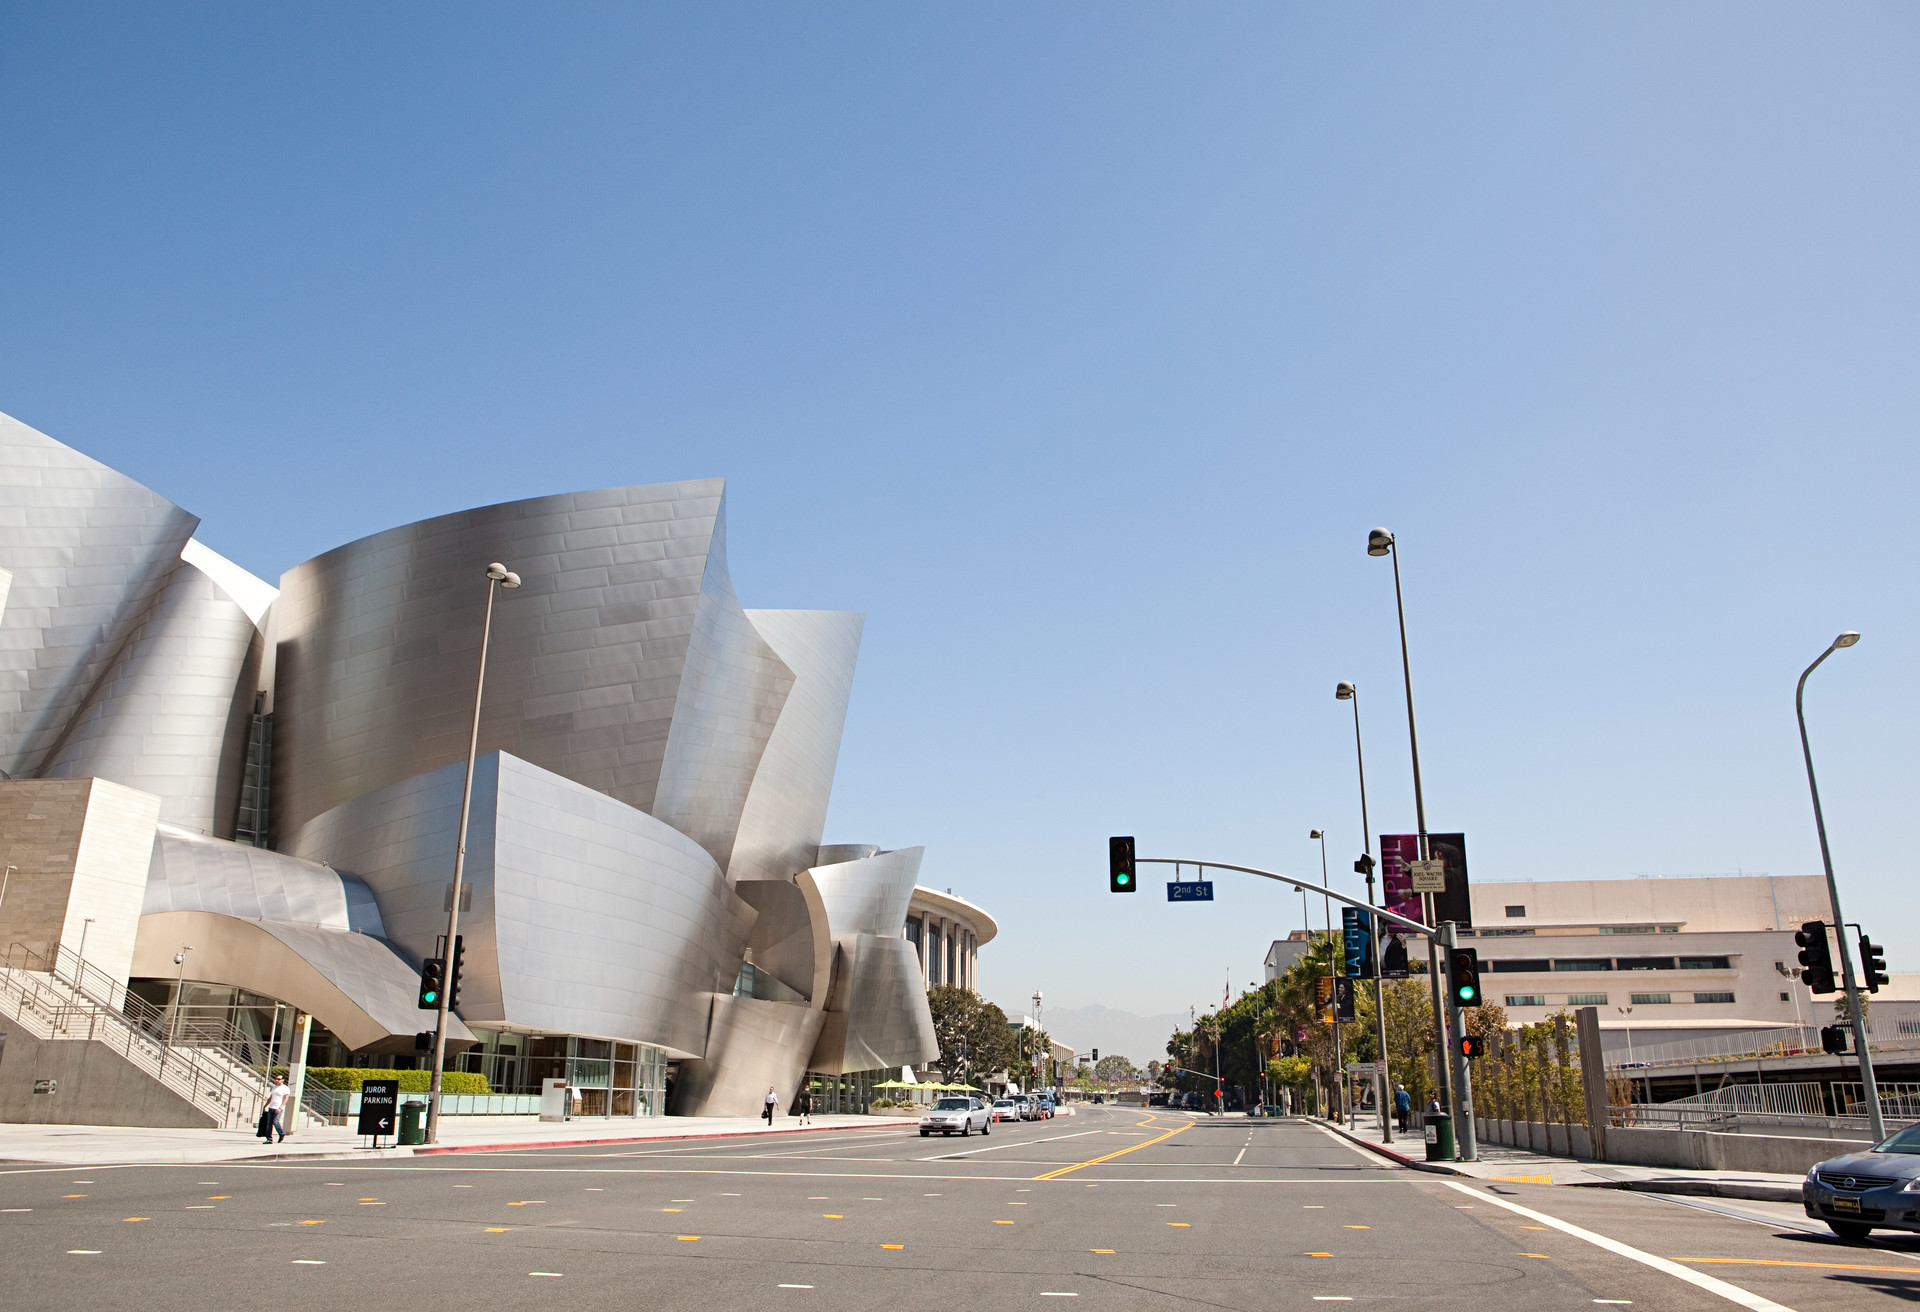 Jazeker, deconstructivisme is asymmetrisch en opvallend! Kijk maar naar de Walt Disney Concert Hall in Los Angeles